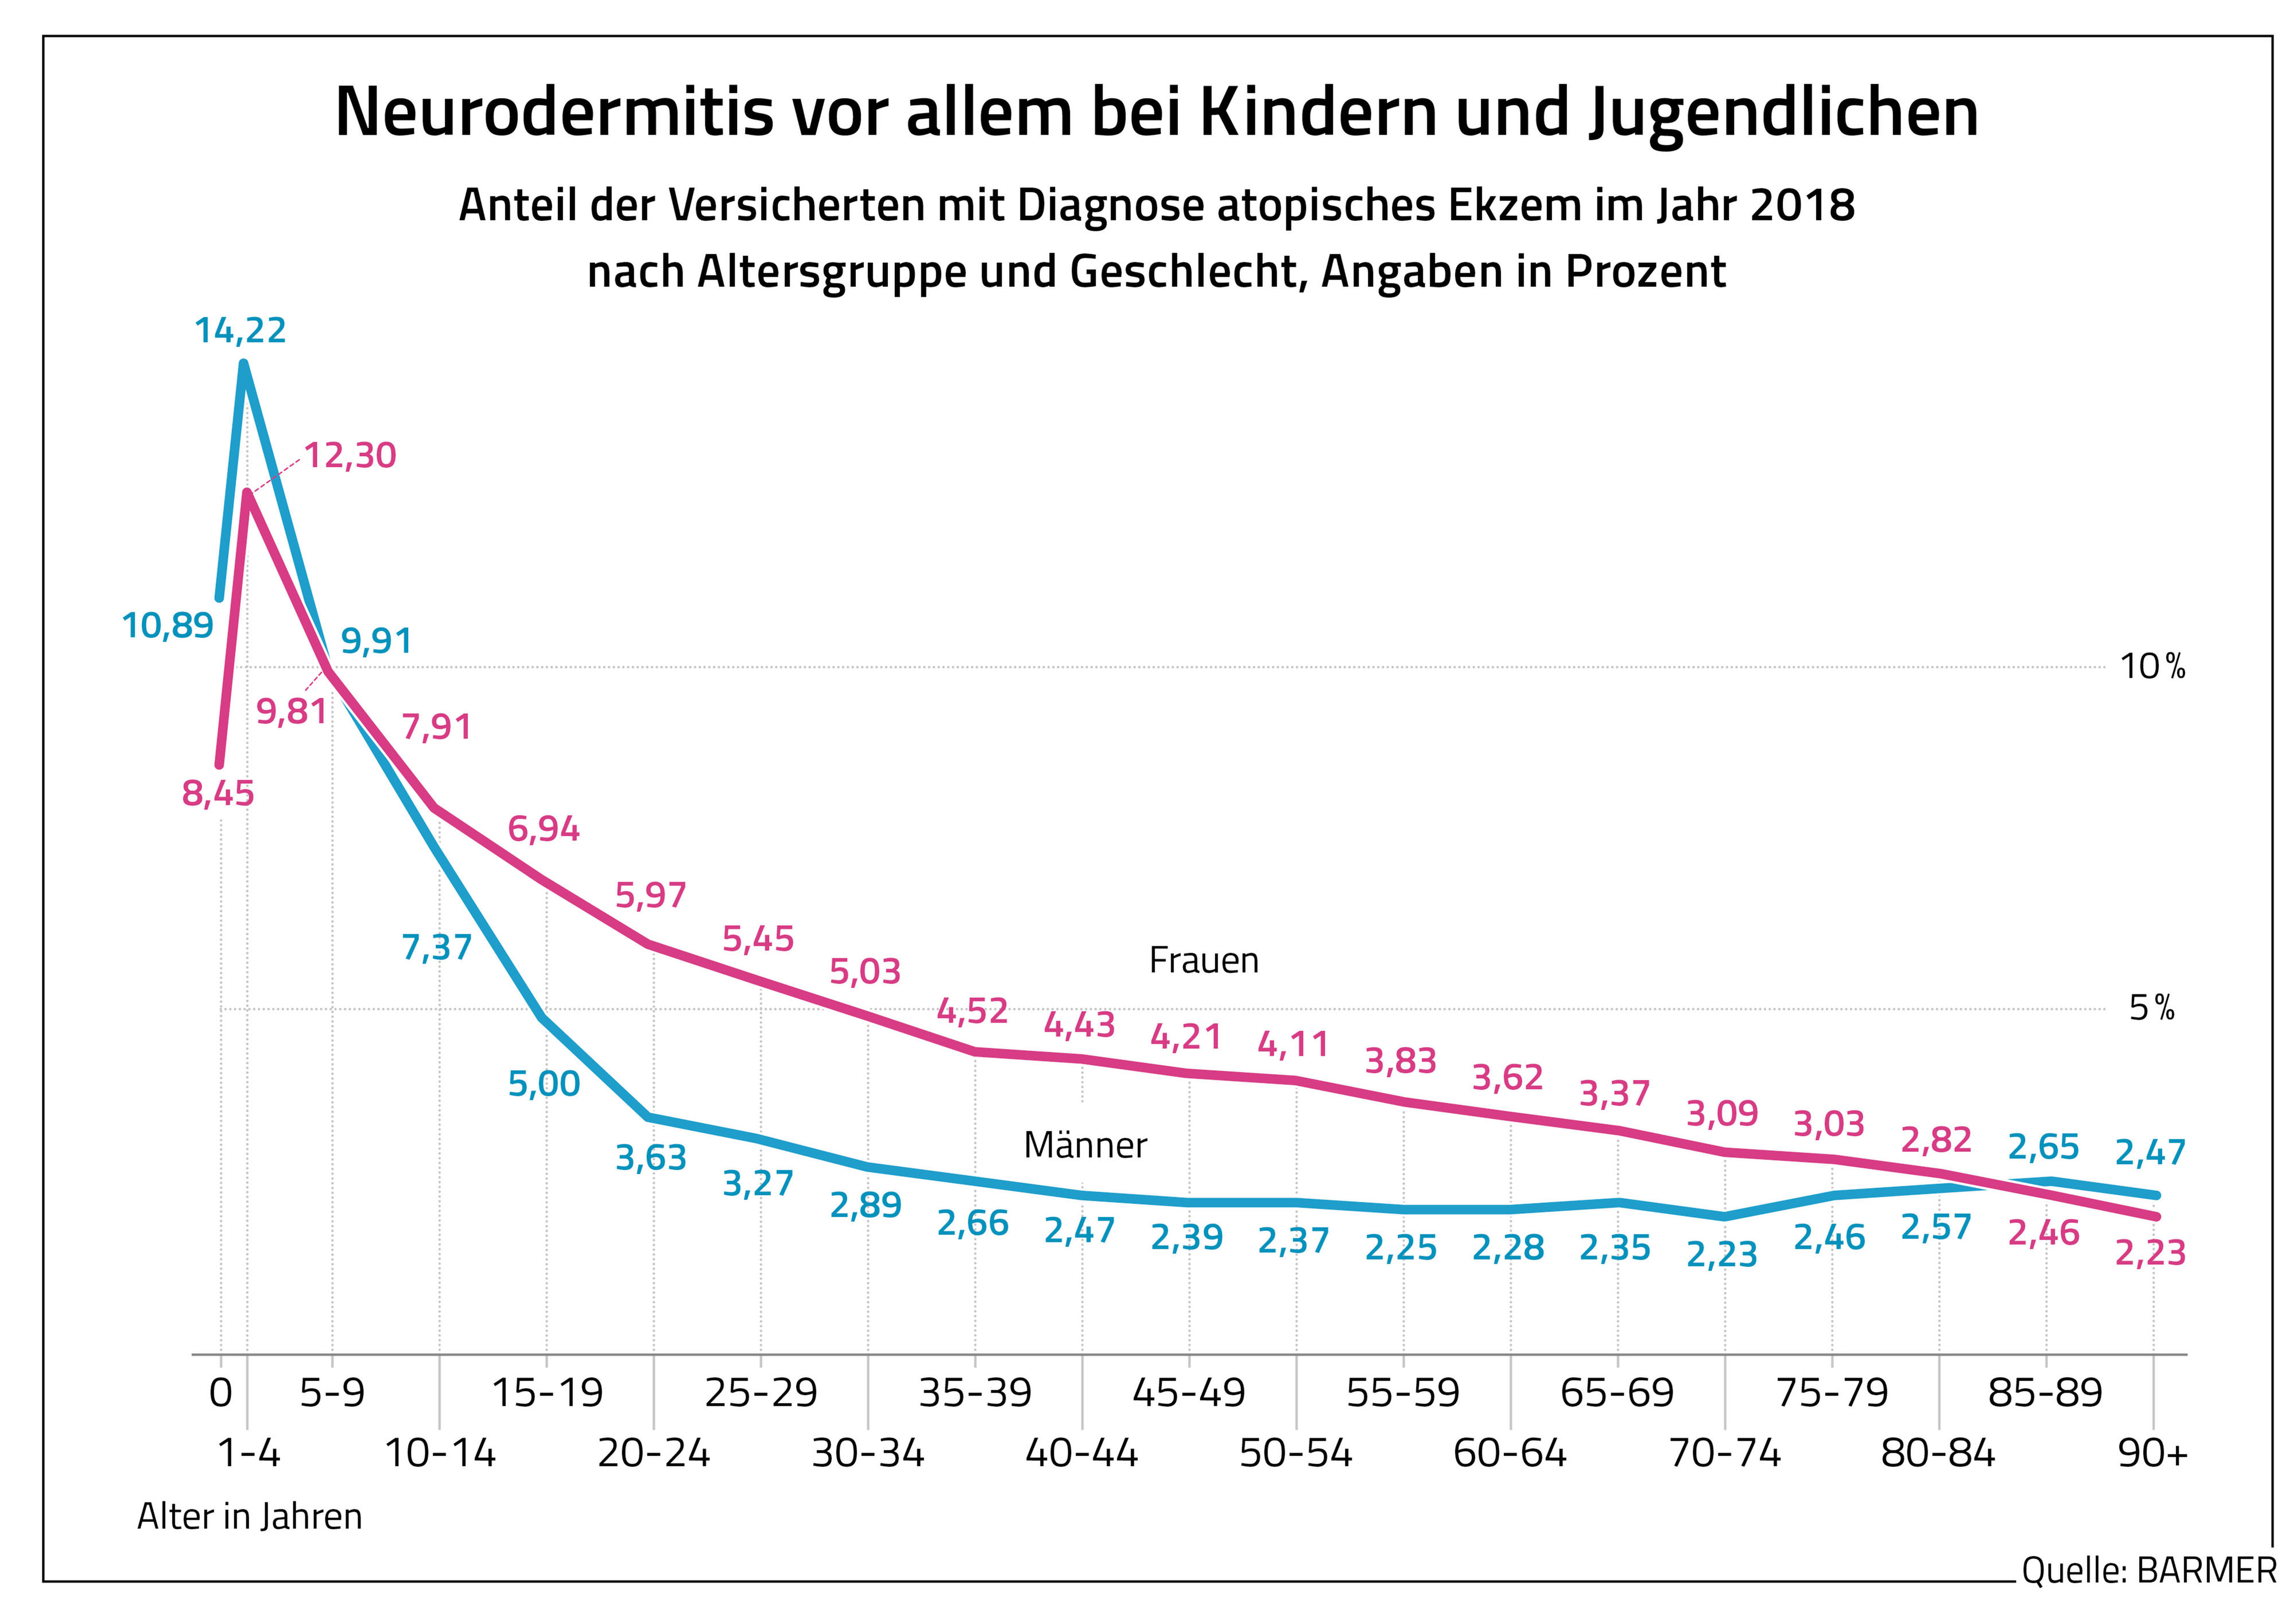 Die Grafik zeigt den Anteil der Versicherten mit Diagnose atopisches Ekzem im Jahr 2018 nach Alter und Geschlecht (in Prozent)